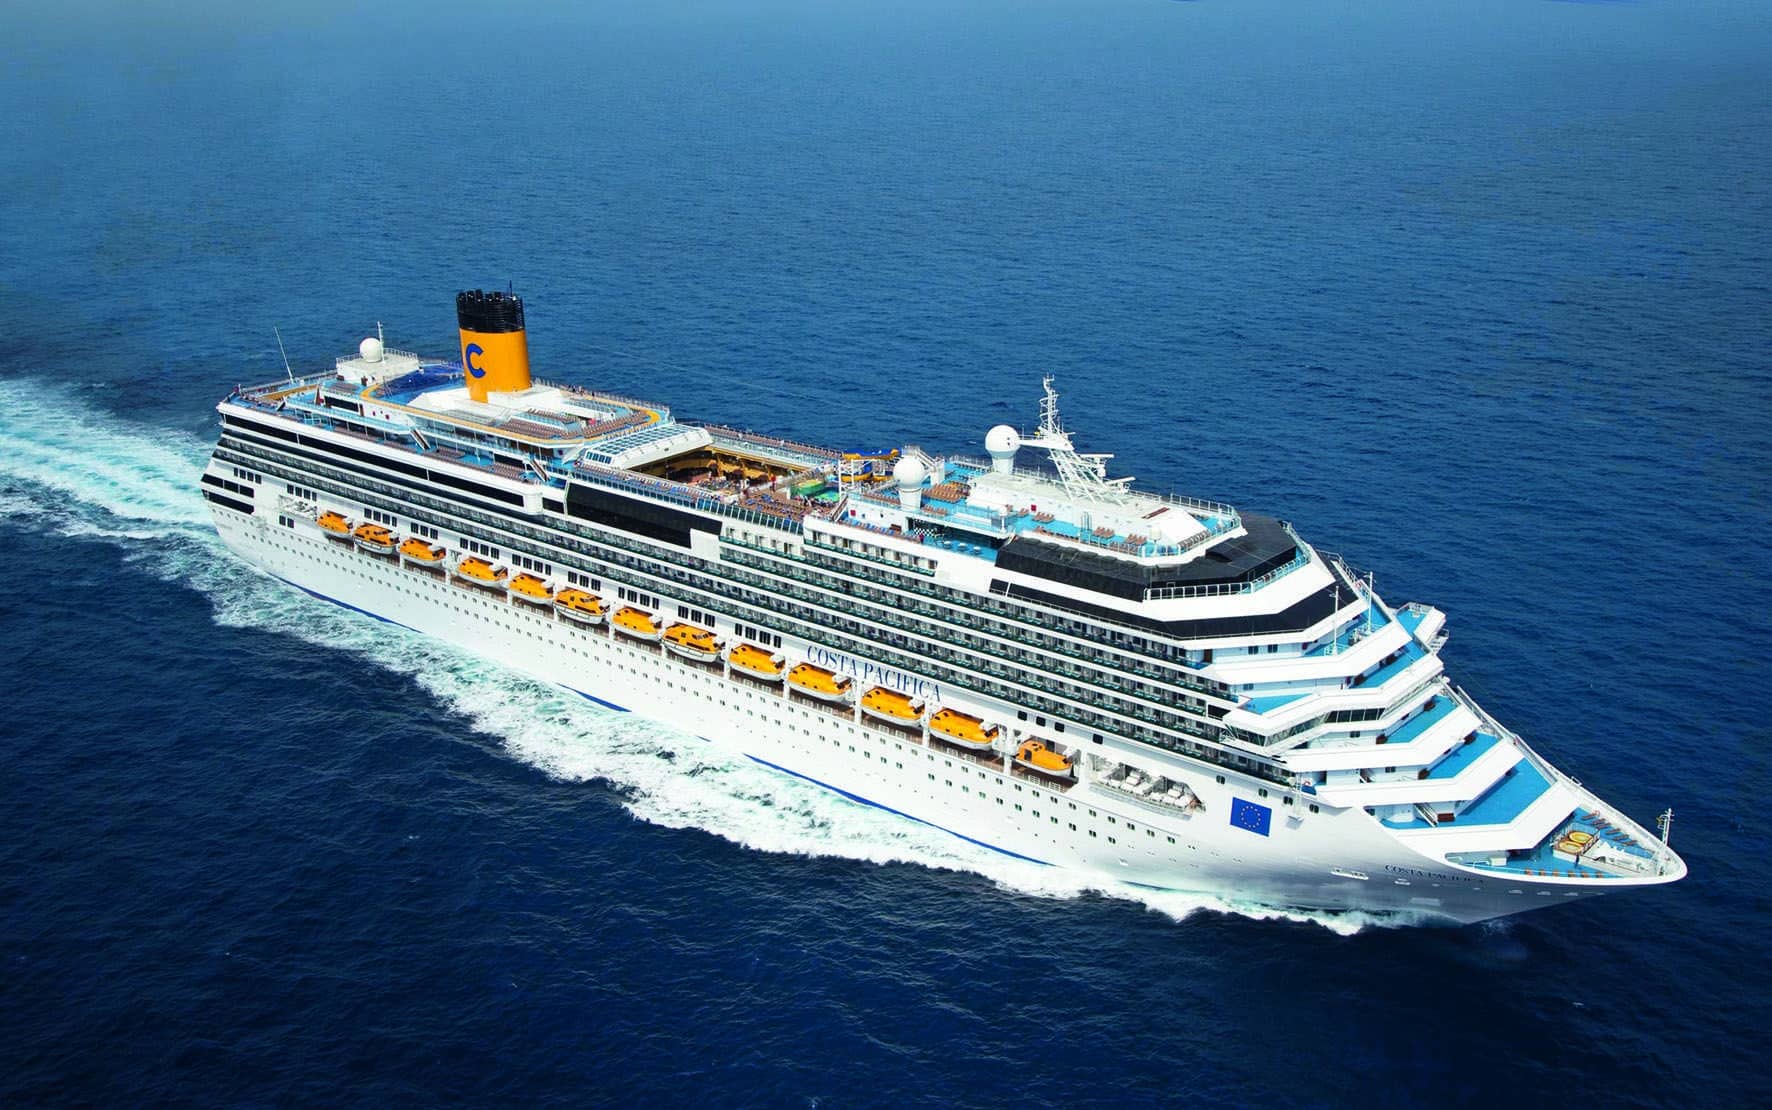 Costa Crociere und die EU Kommission verkündenerfolgreichen Abschluss des „Sustainable Cruise“- Projekts